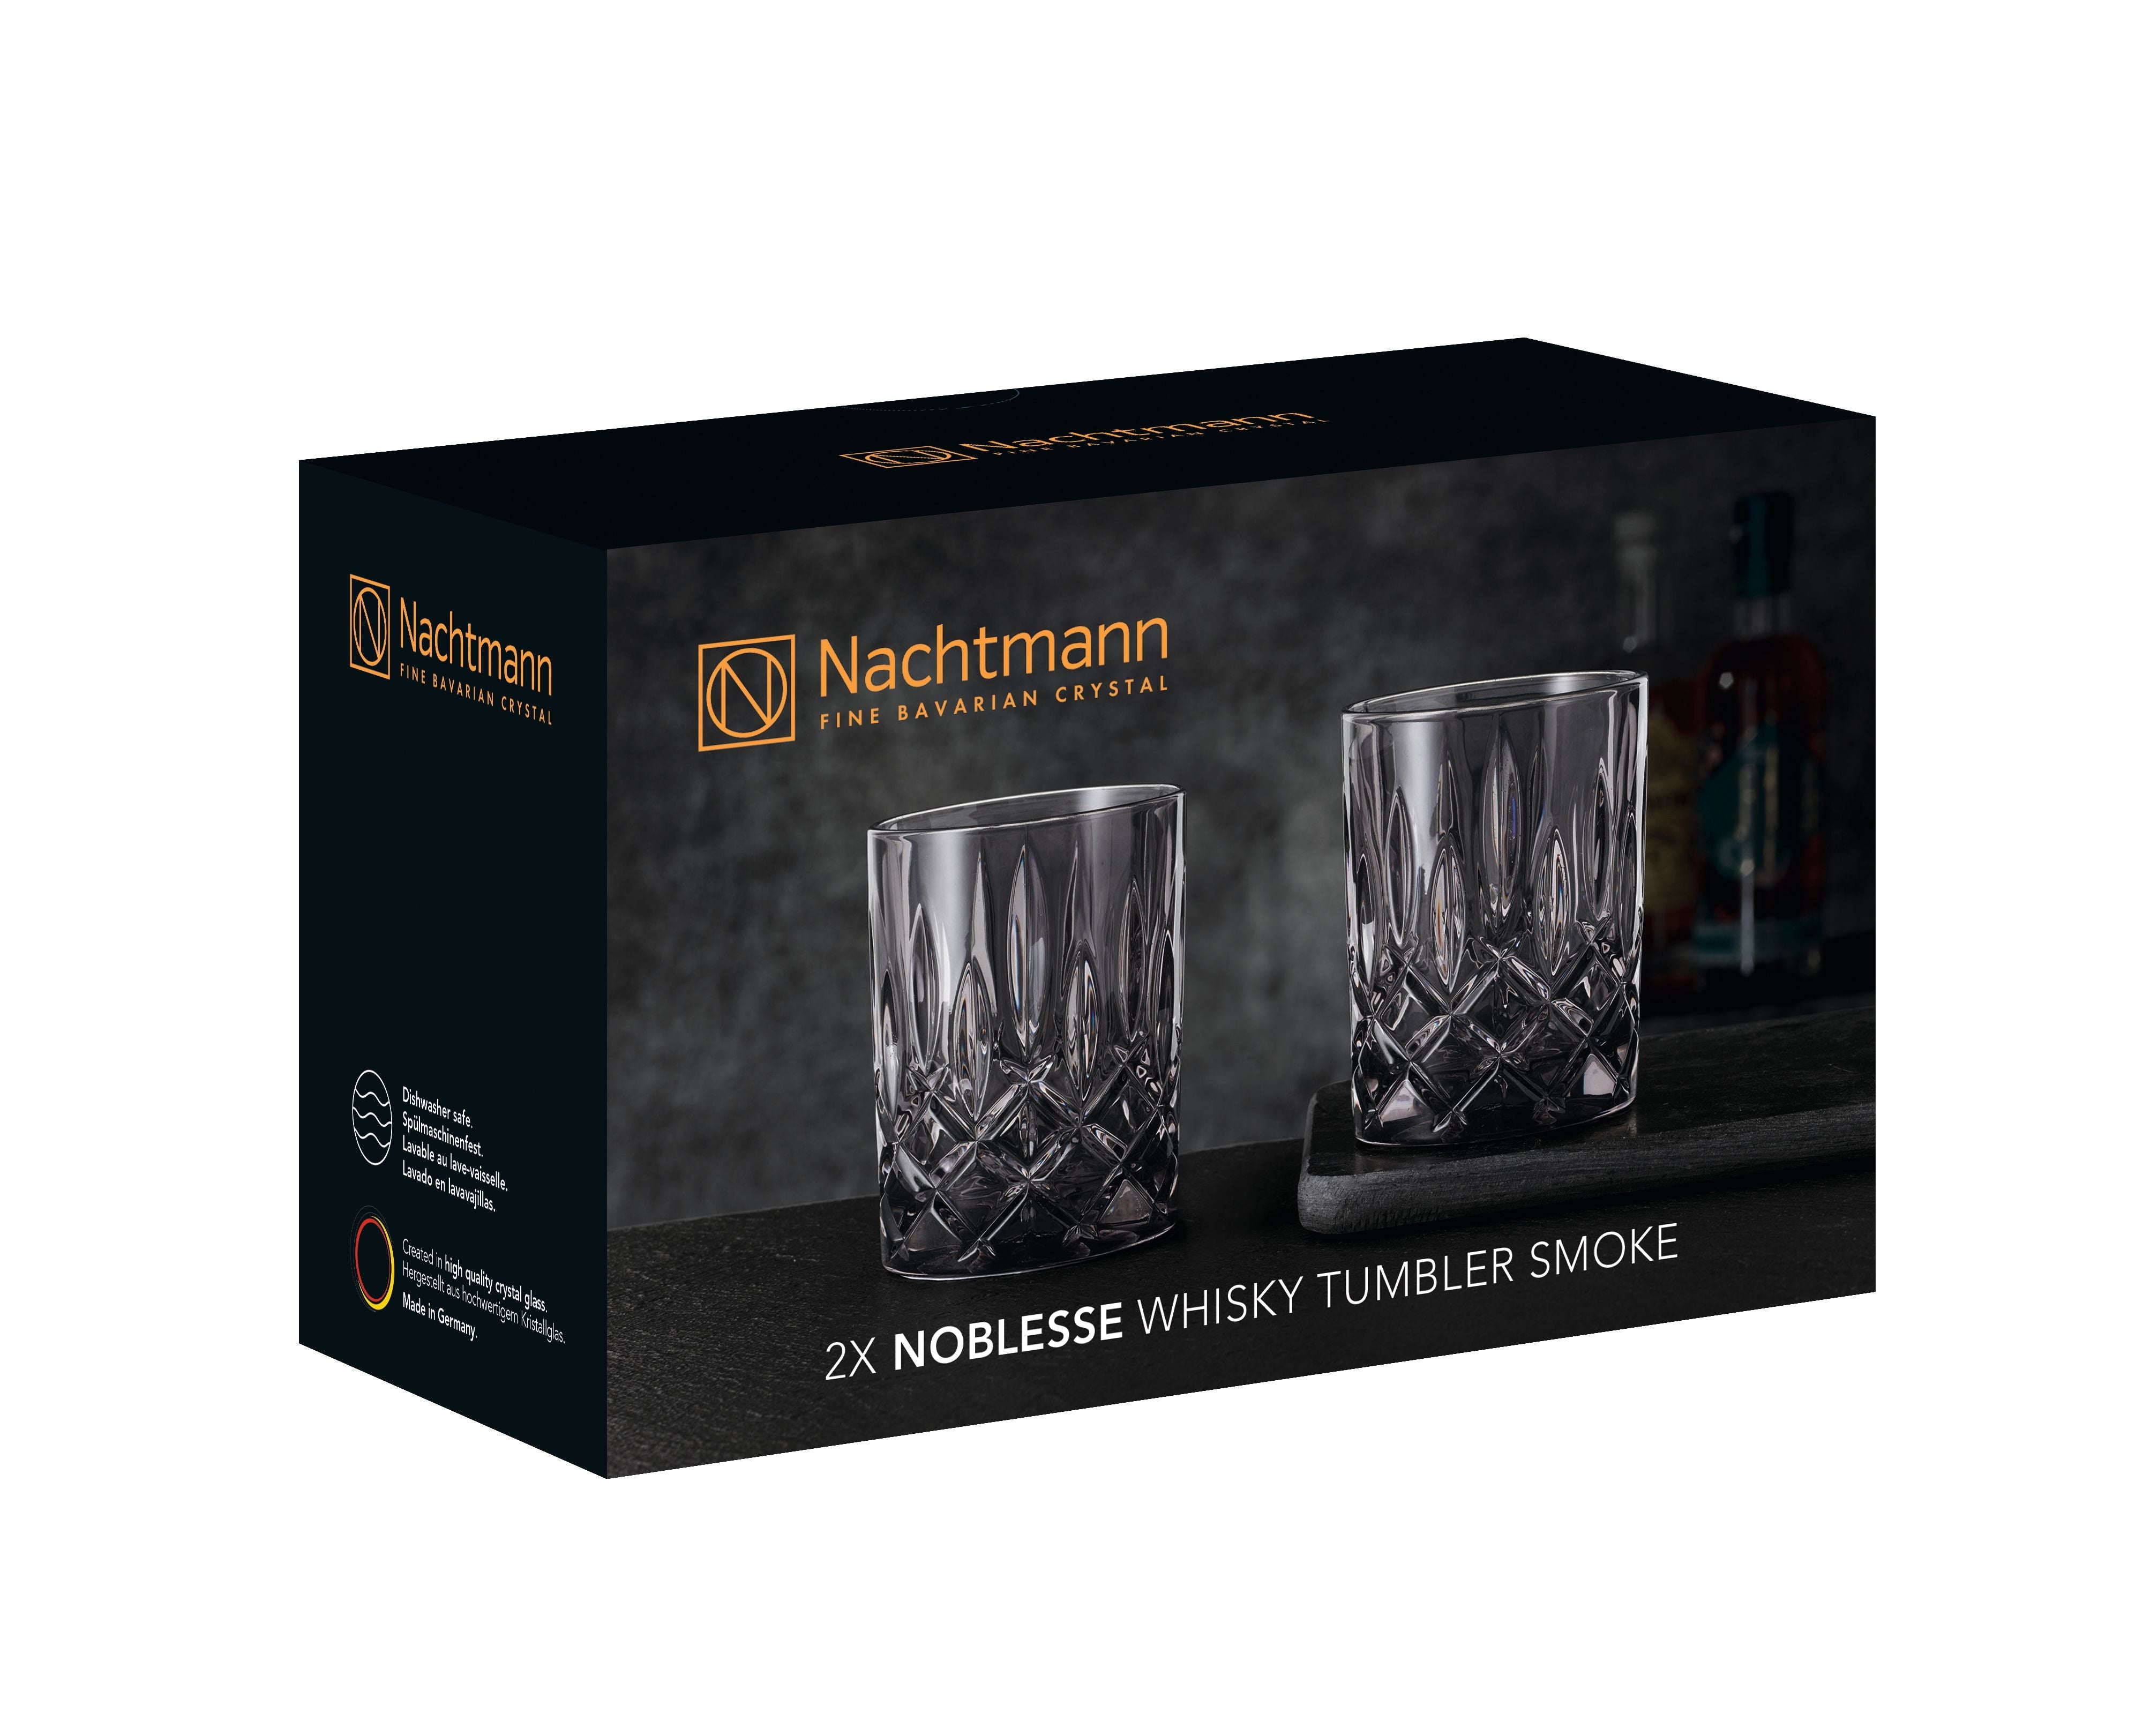 Nachtmann Noblesse威士忌玻璃烟295毫升，2套2